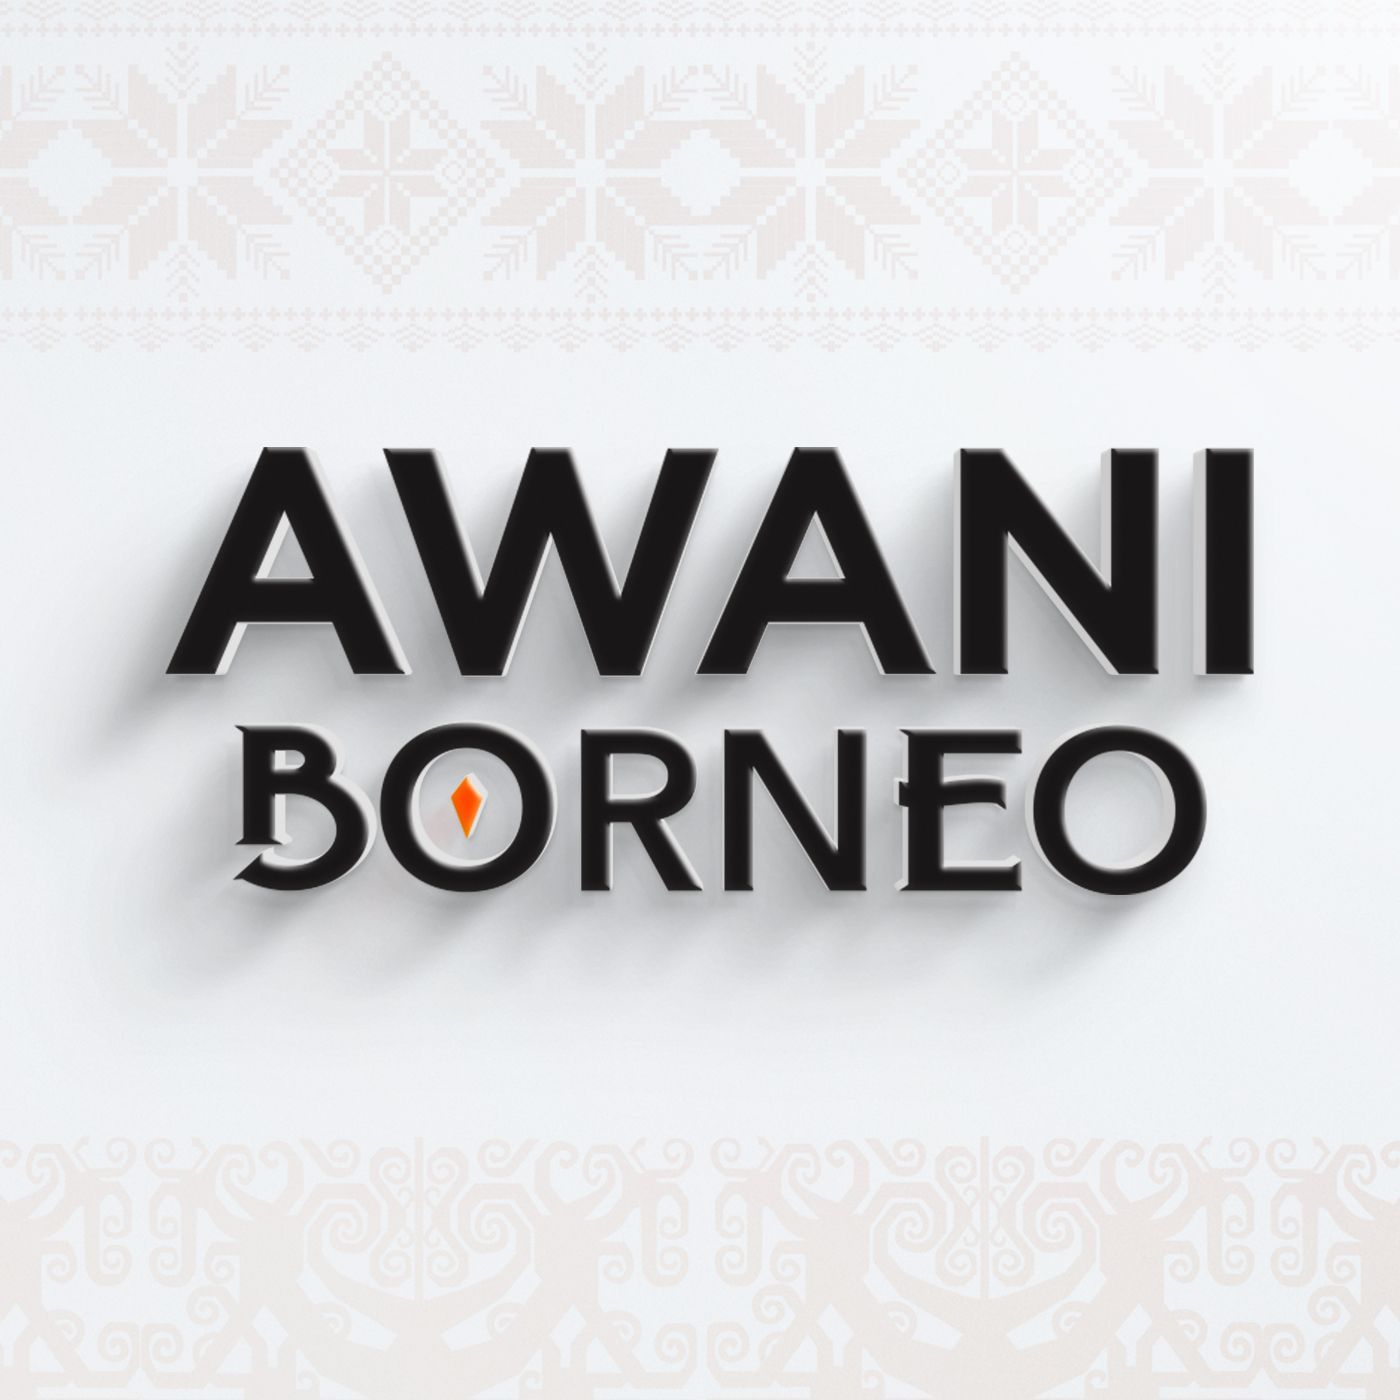 AWANI Borneo [25/06/2022] - Kerajaan sedang teliti | Warisan turun-temurun | Jangan berebut kuasa, kerusi